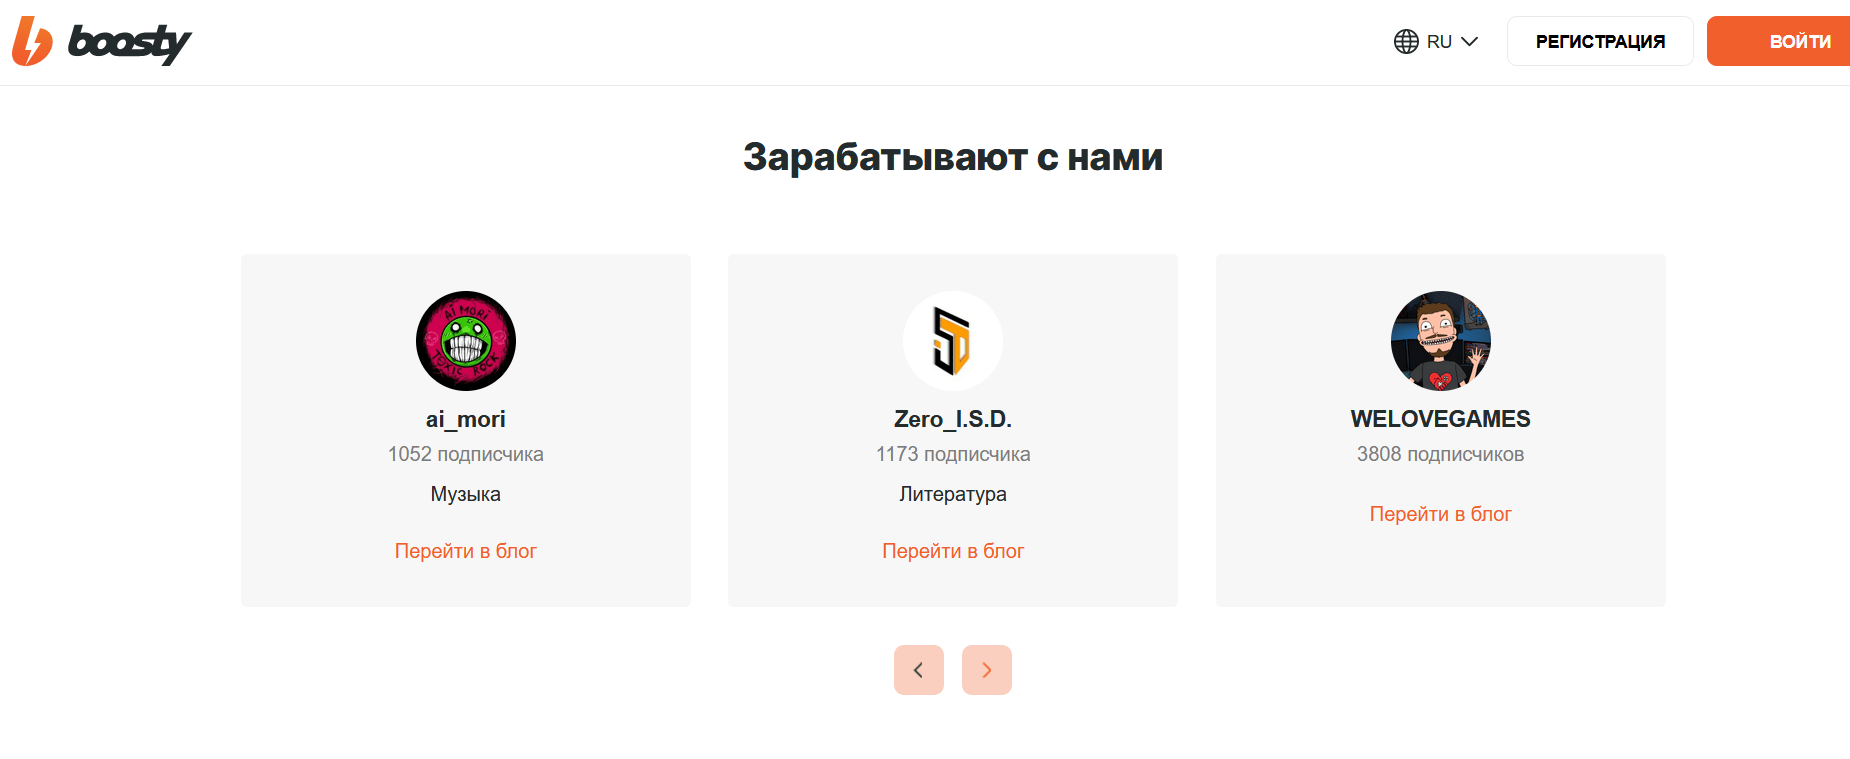 Бусти (Boosty) — новый российский сервис для монетизации Вашего творчества посредством платной подписки на ваш контент. Регистрация на сайте Бусти